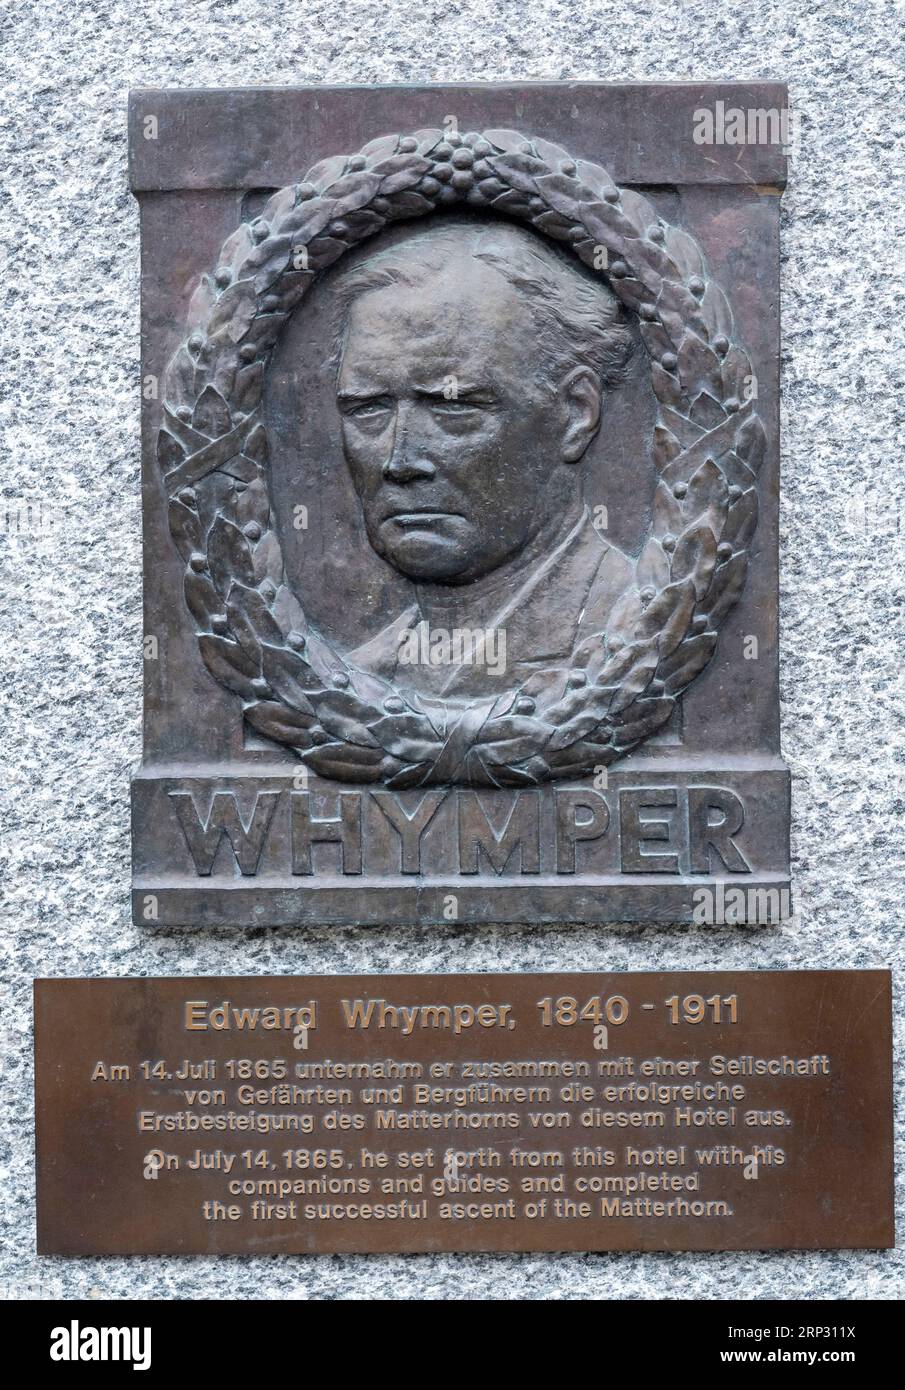 Edward Whymper Memorial. Guidò il primo accento di successo del Cervino nel 1865. La targa si trova all'esterno del Monte Rosa Hotel, Zermatt. Foto Stock